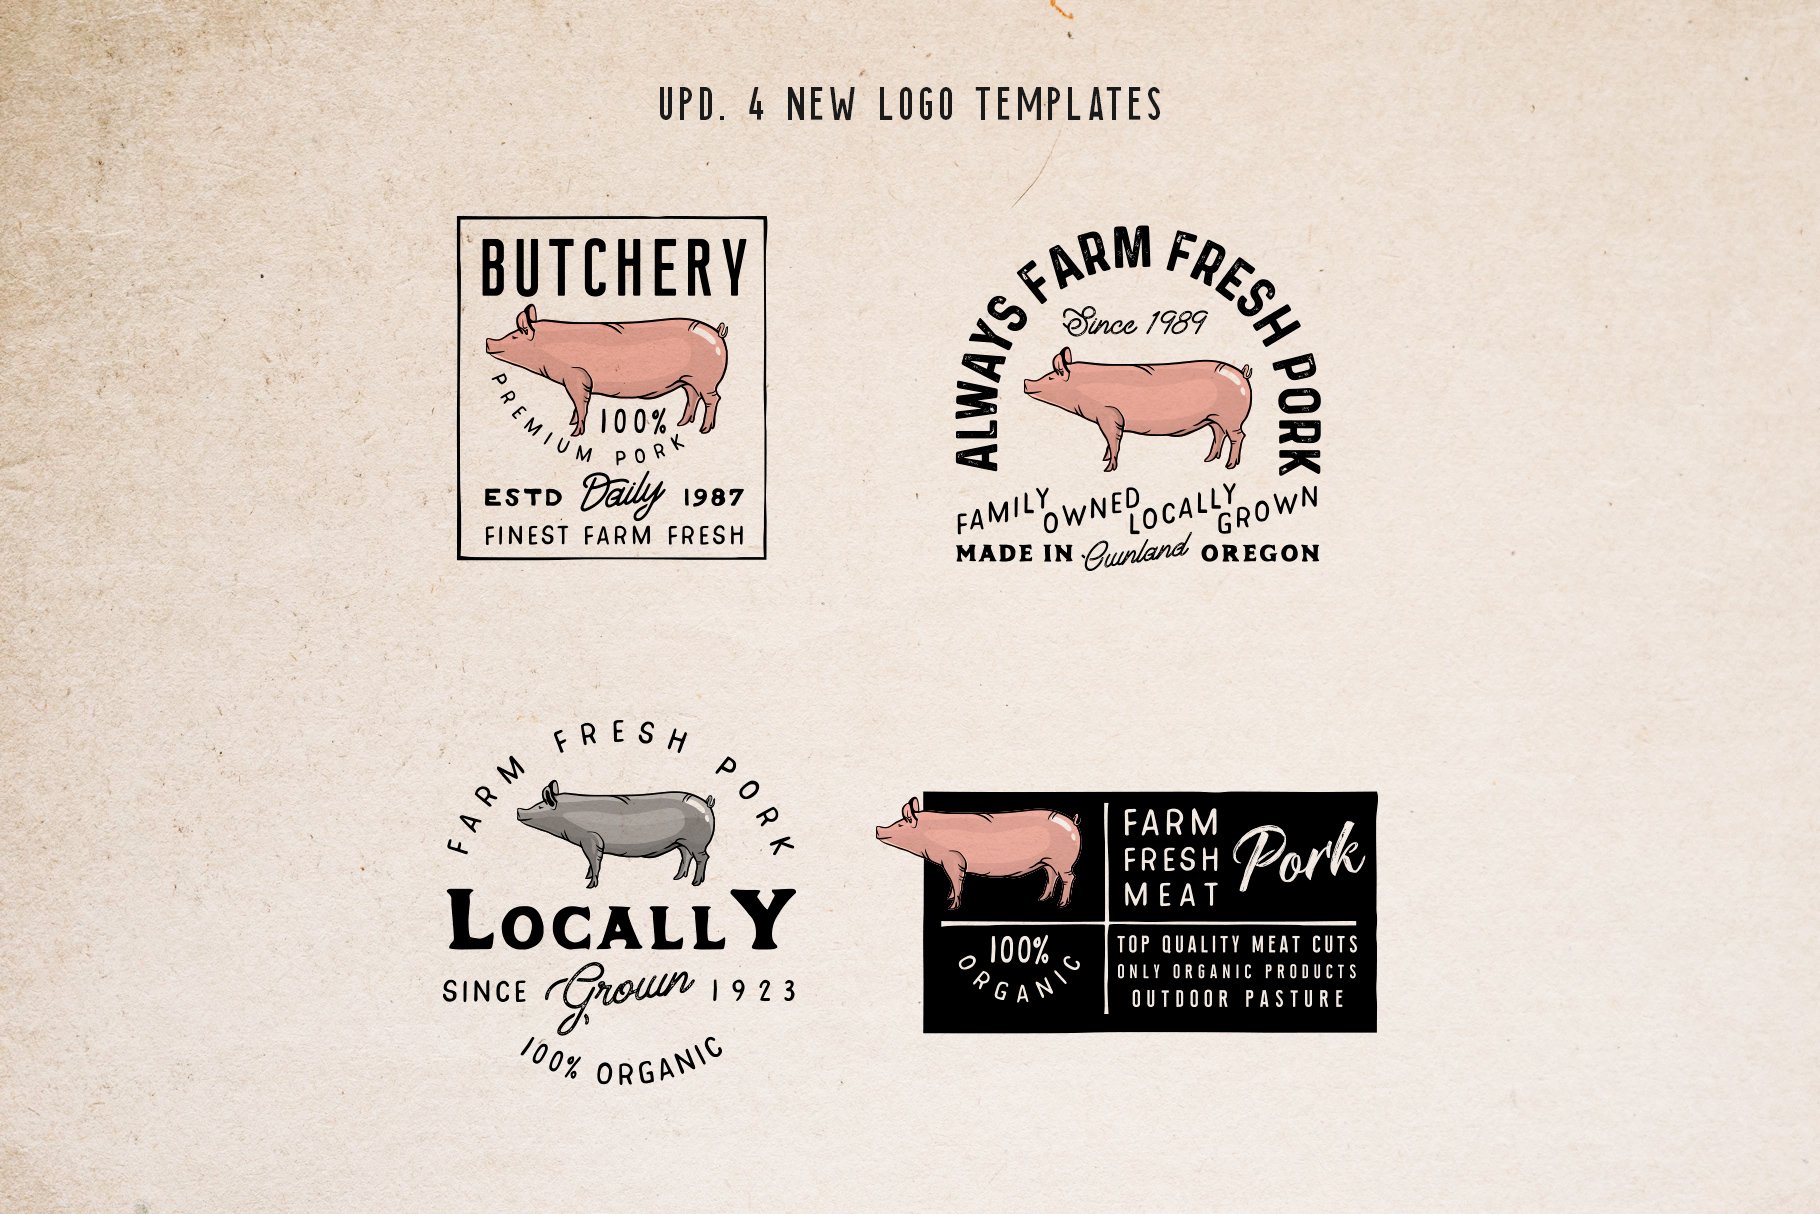 Cool retro farm logos with a pig.